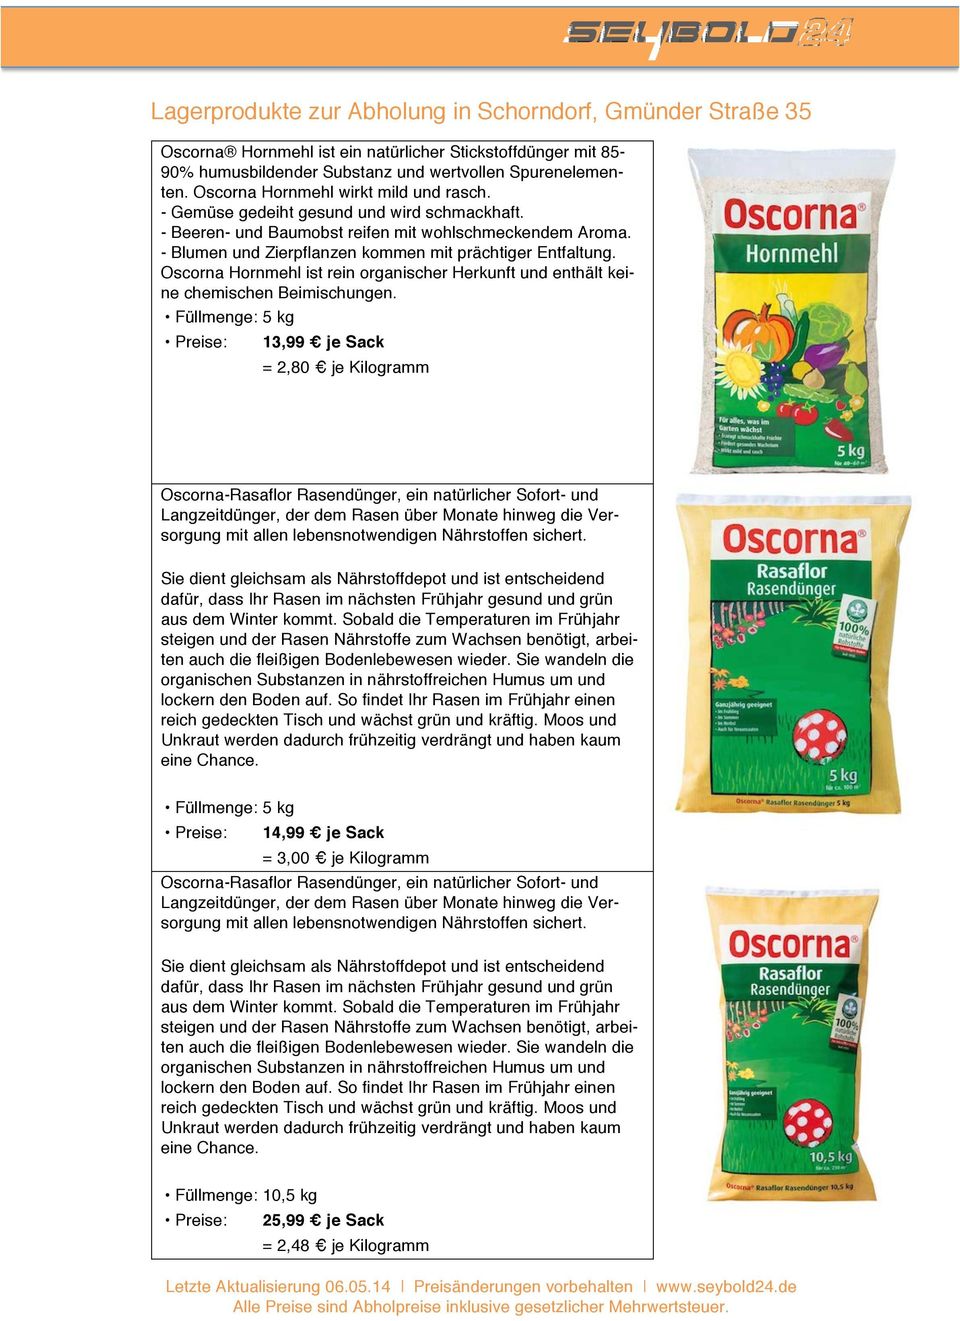 Oscorna Hornmehl ist rein organischer Herkunft und enthält keine chemischen Beimischungen.